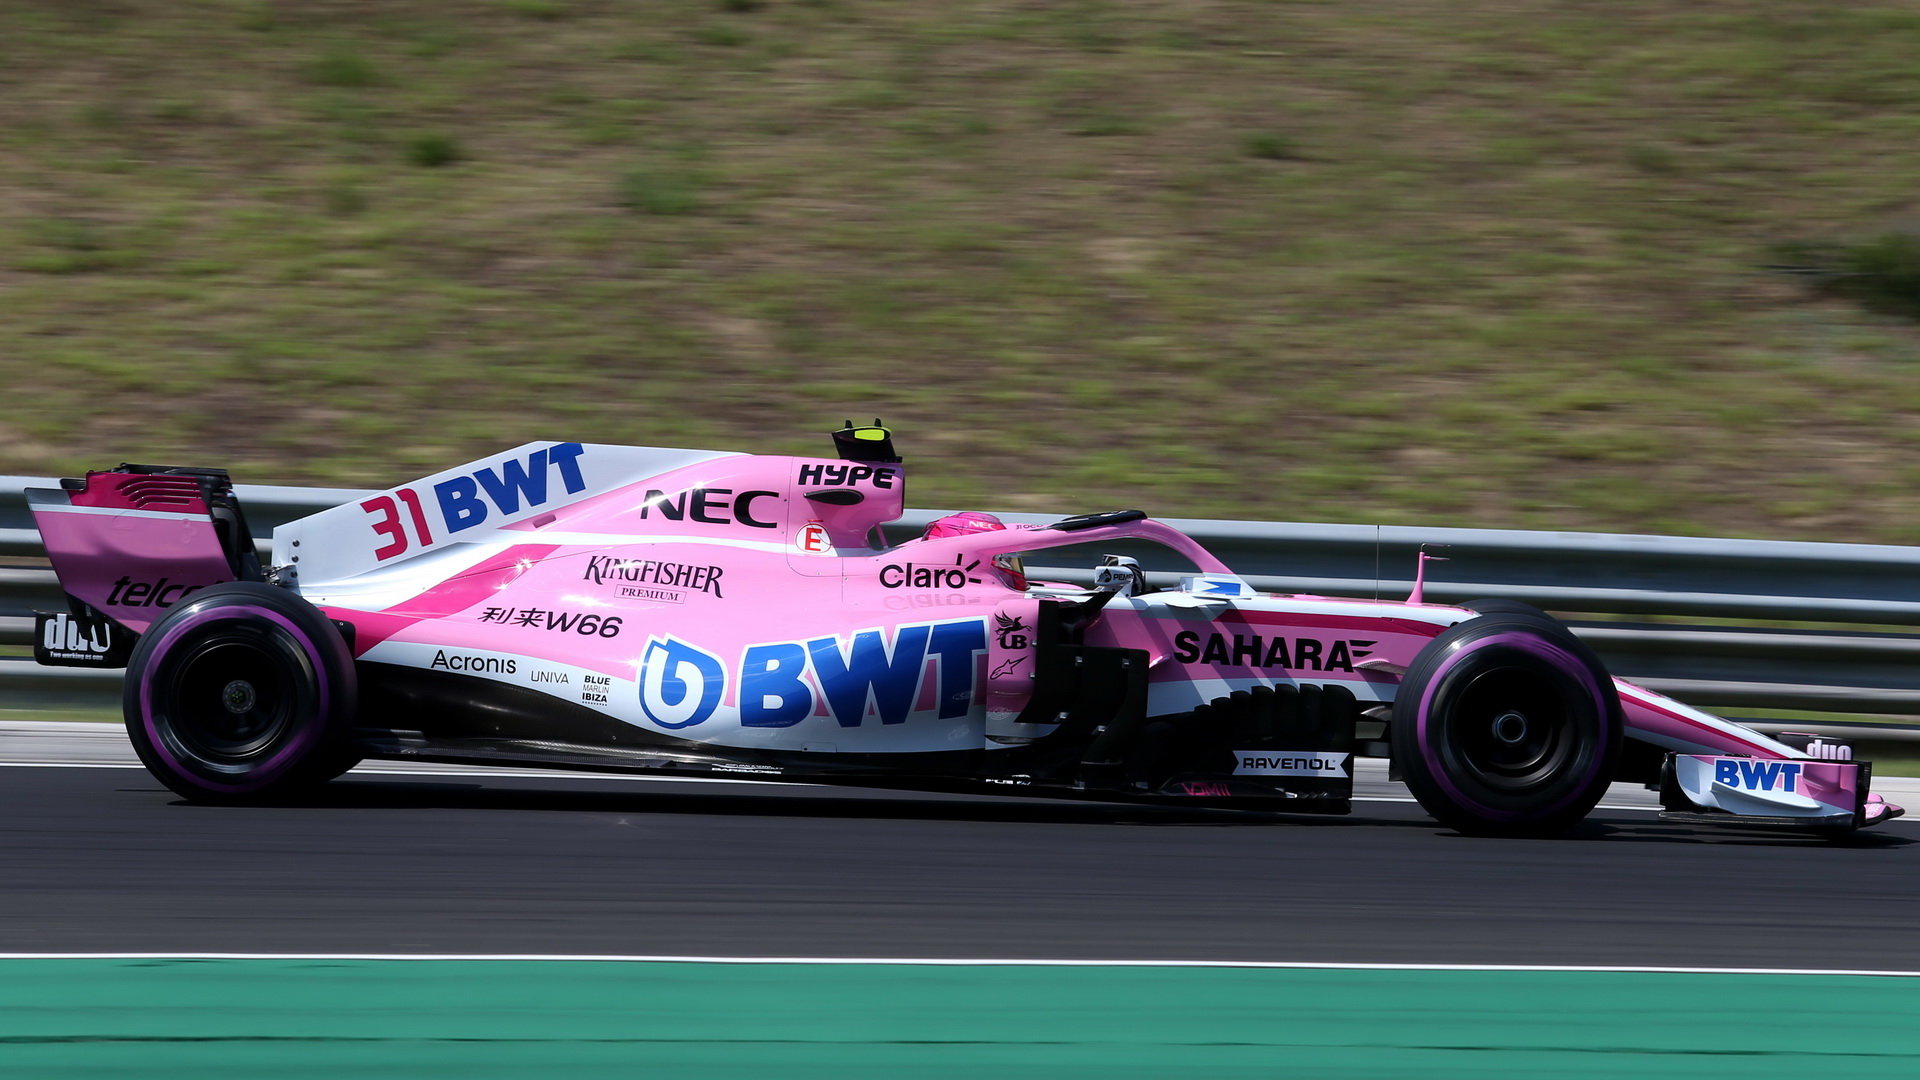 Force India čelí boji o to, kdo nad ní získá kontrolu